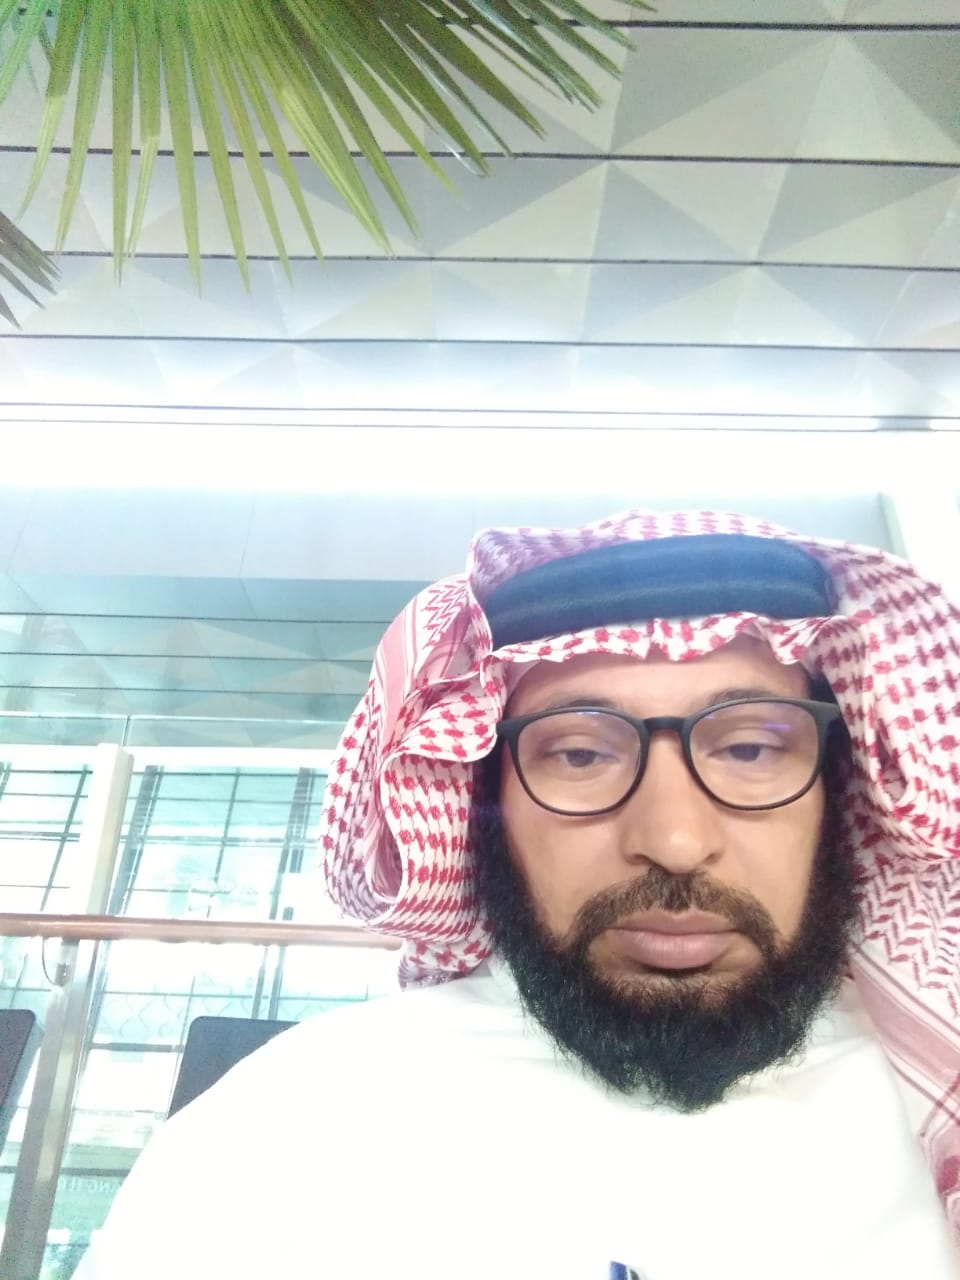 كلمة مدير إدارة المساجد والدعوة والإرشاد بمحافظة ضمد في ذكرى اليوم الوطني89